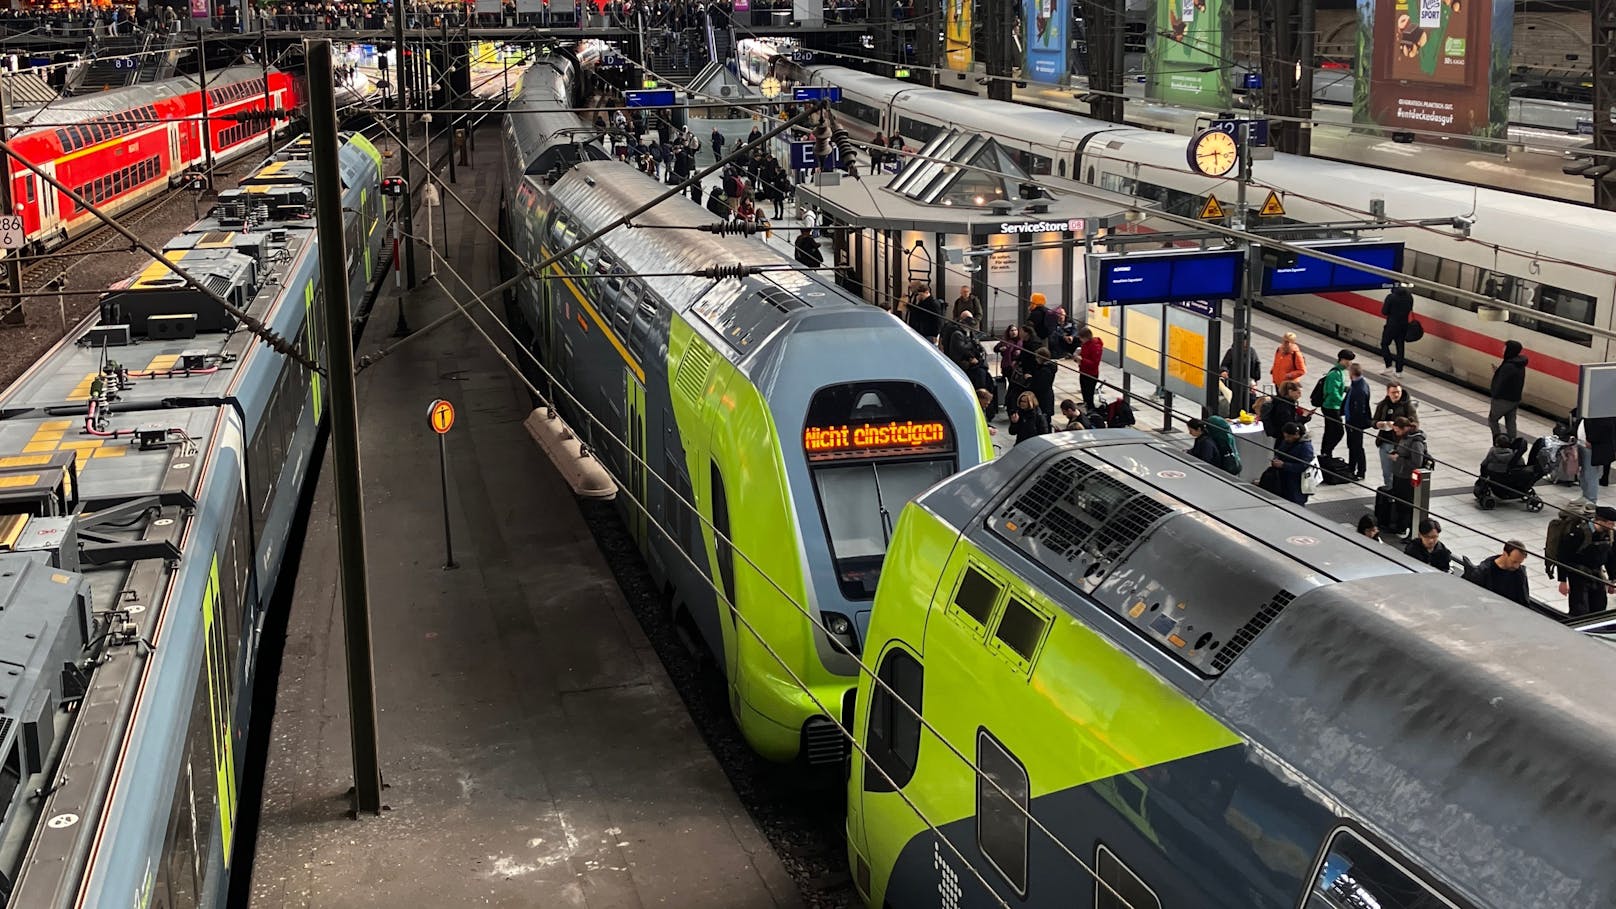 Zug in Hamburg entgleist – mehrere Verletzte